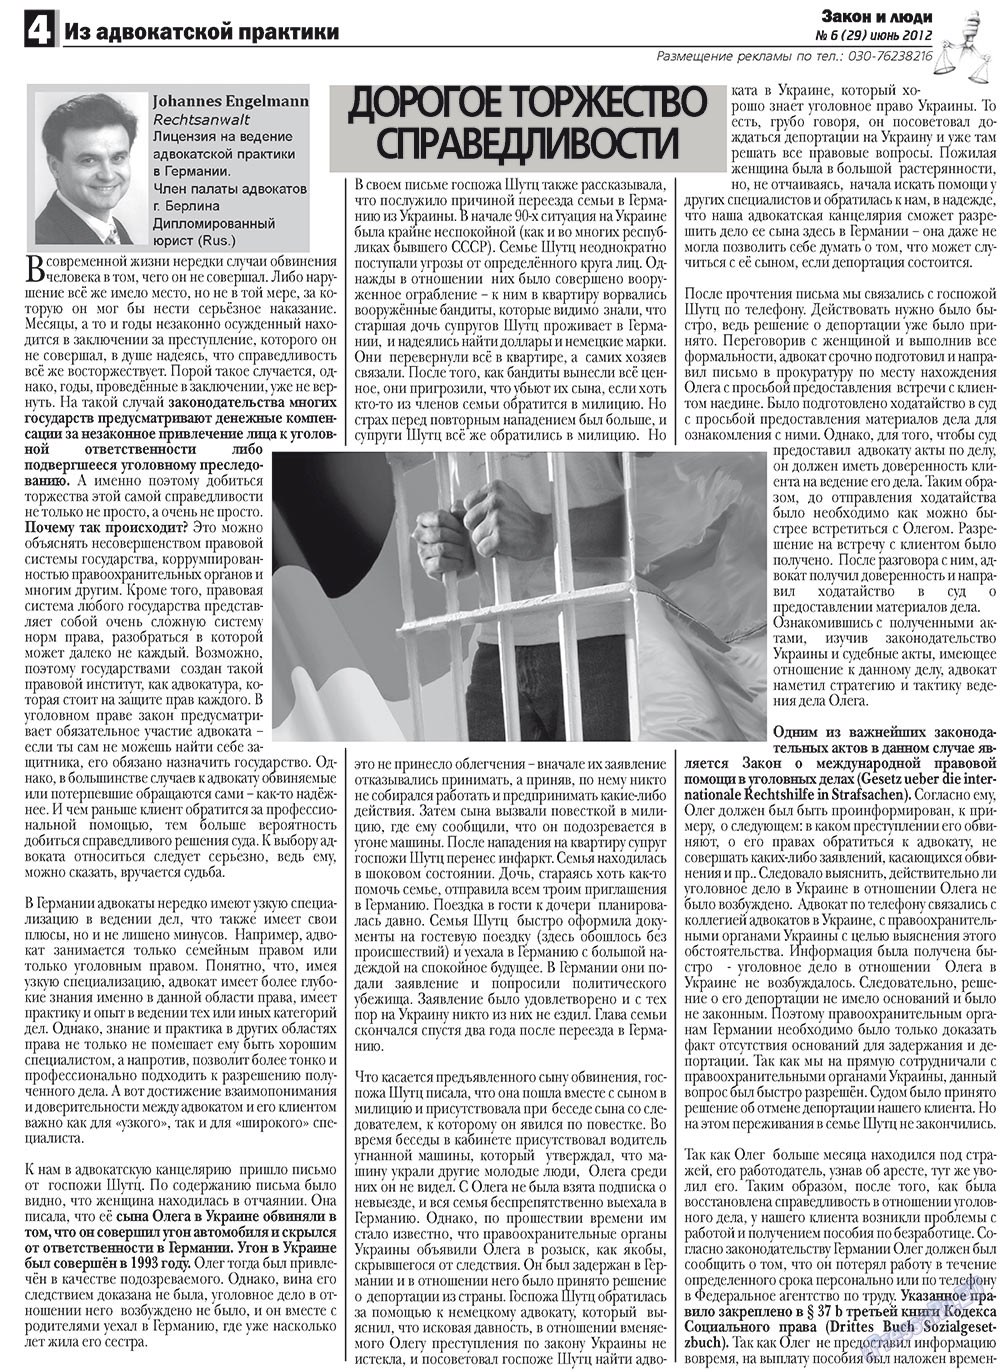 Закон и люди, газета. 2012 №6 стр.4